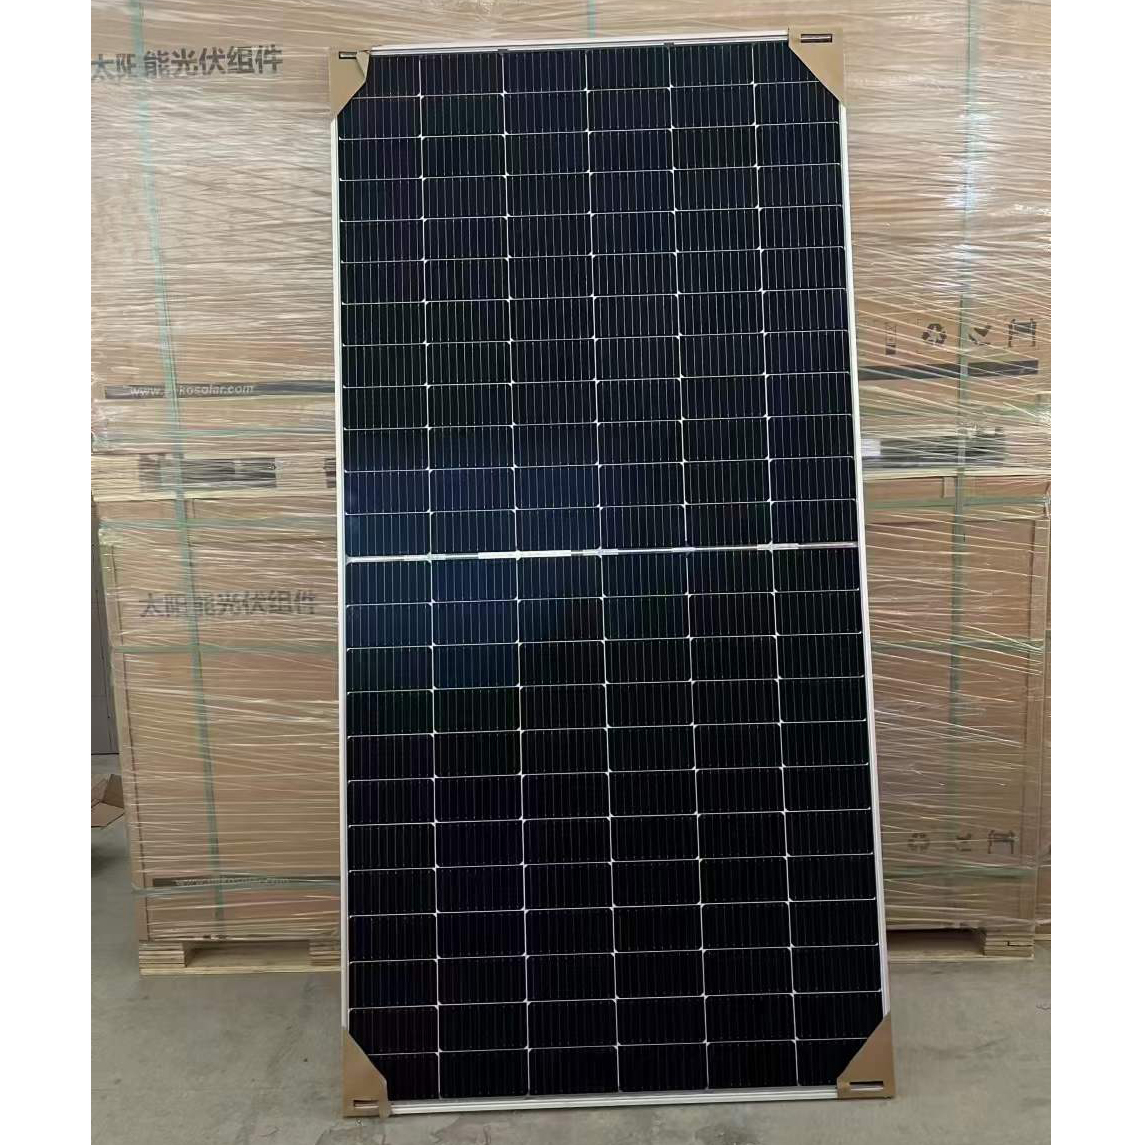 晶科540w双波双面发电板 太阳能电池板 光伏组件 A级质保30年